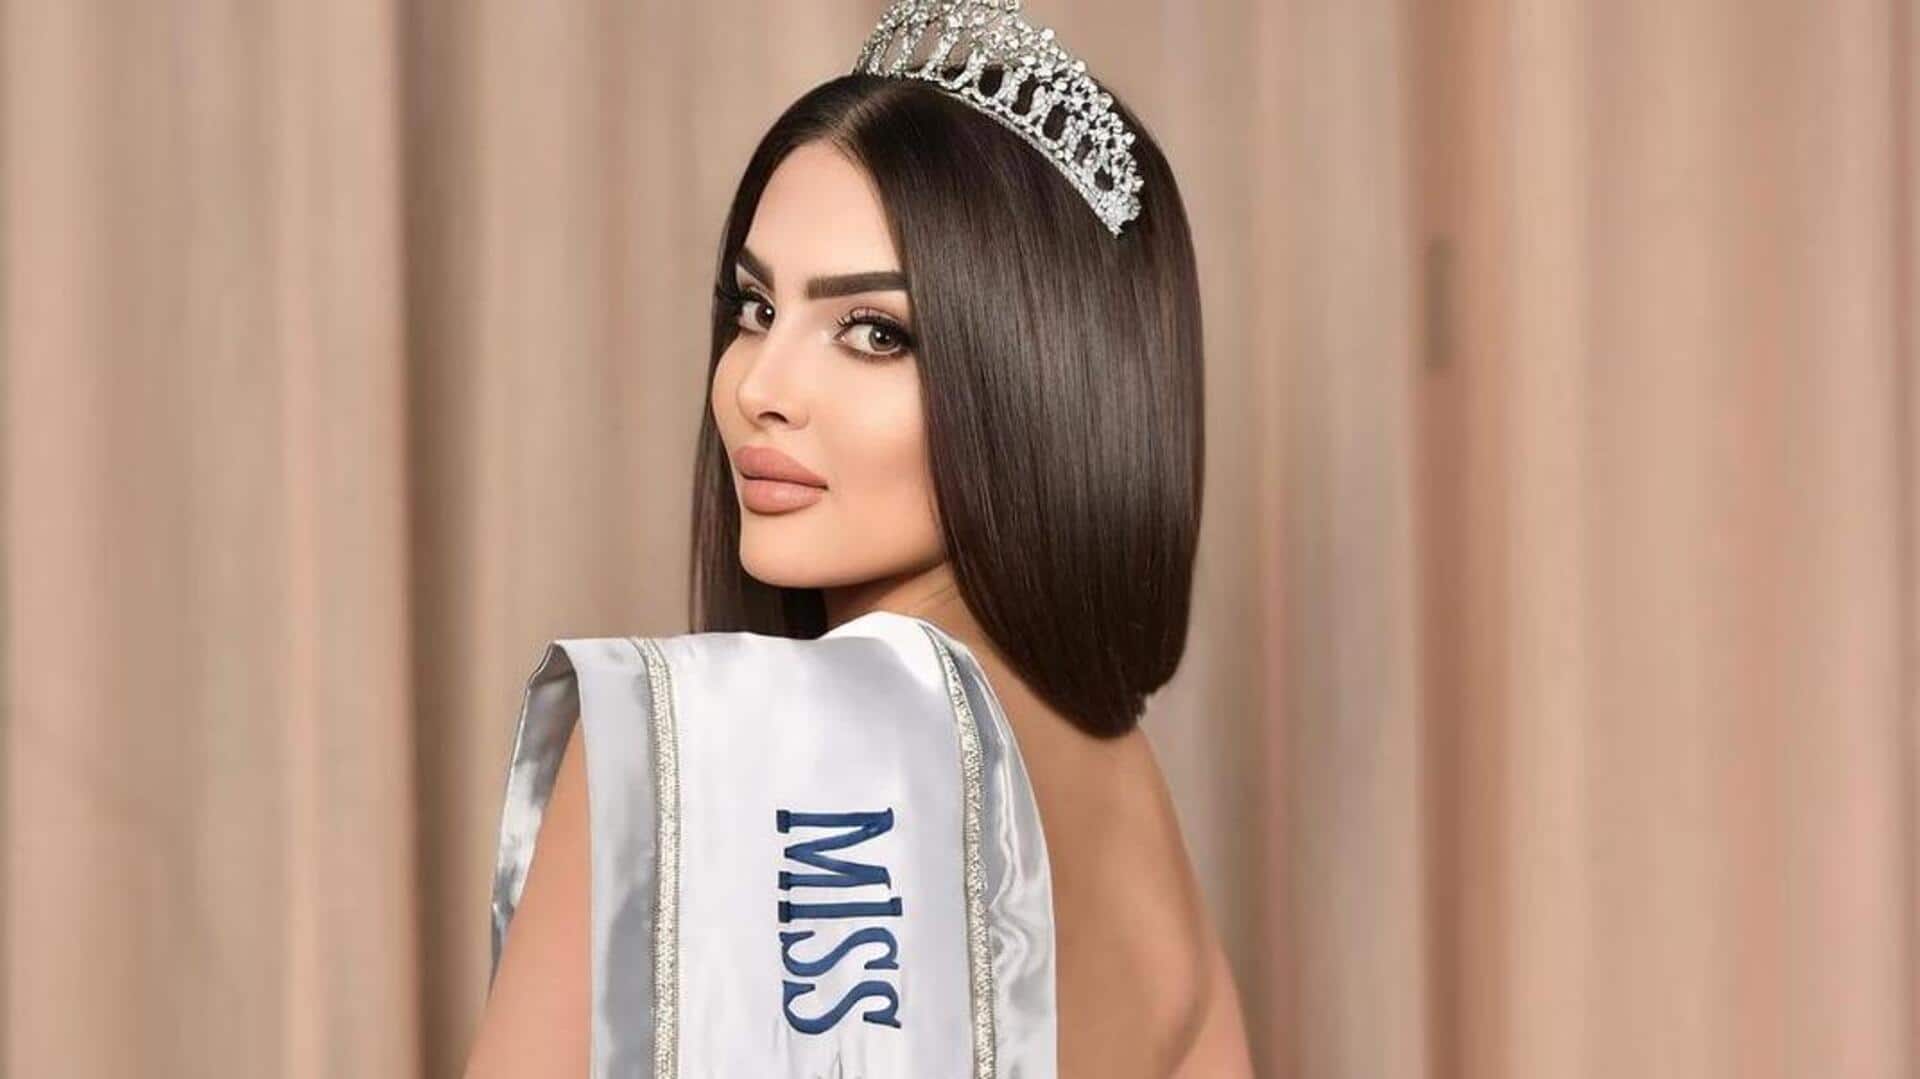 मिस यूनिवर्स के इतिहास में पहली बार शामिल होगा सऊदी अरब, ये मॉडल करेगी प्रतिनिधित्व